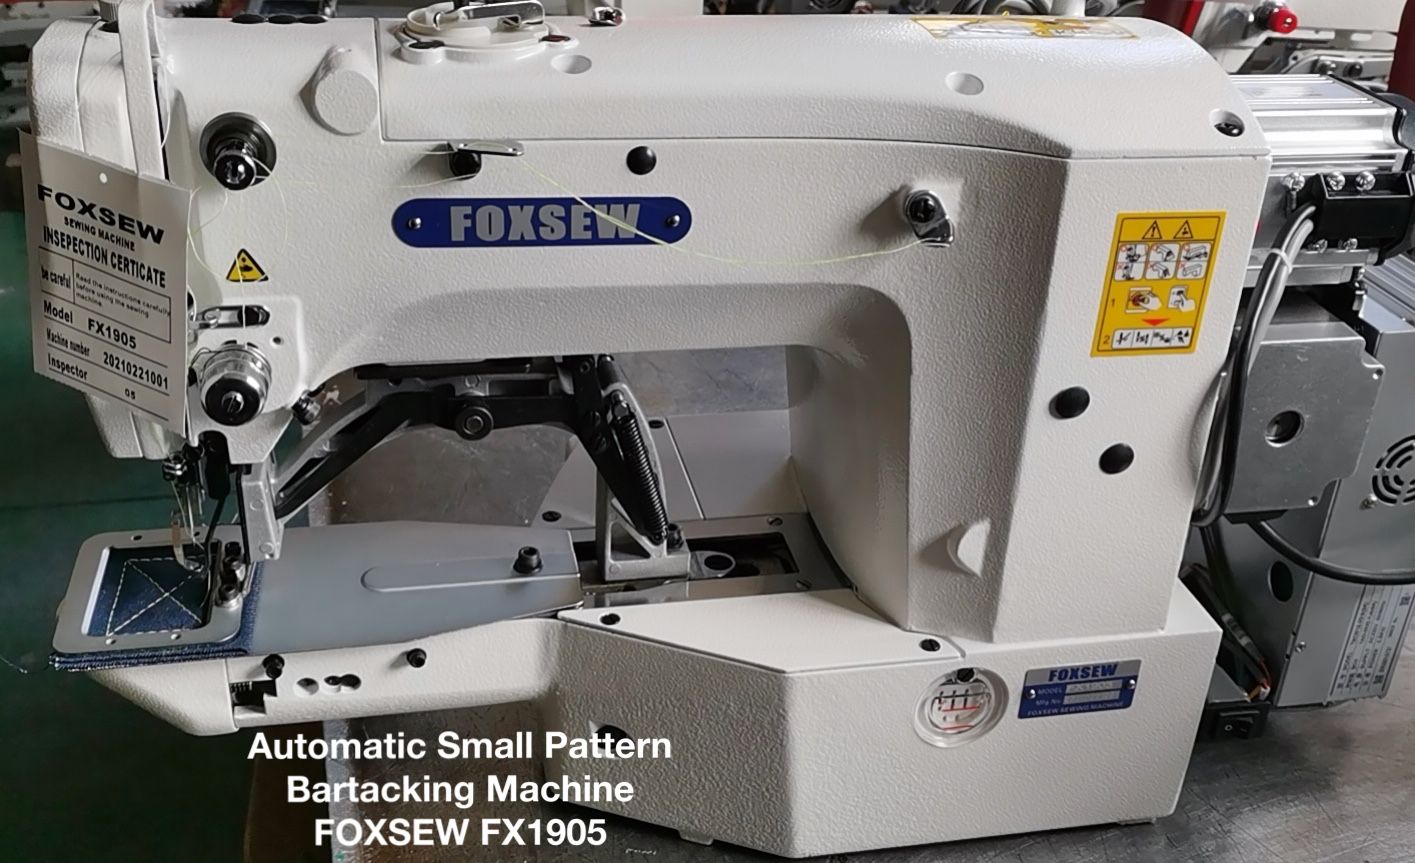 Automatic Small Pattern Bartacking Sewing Machine Foxsew Fx1905 2